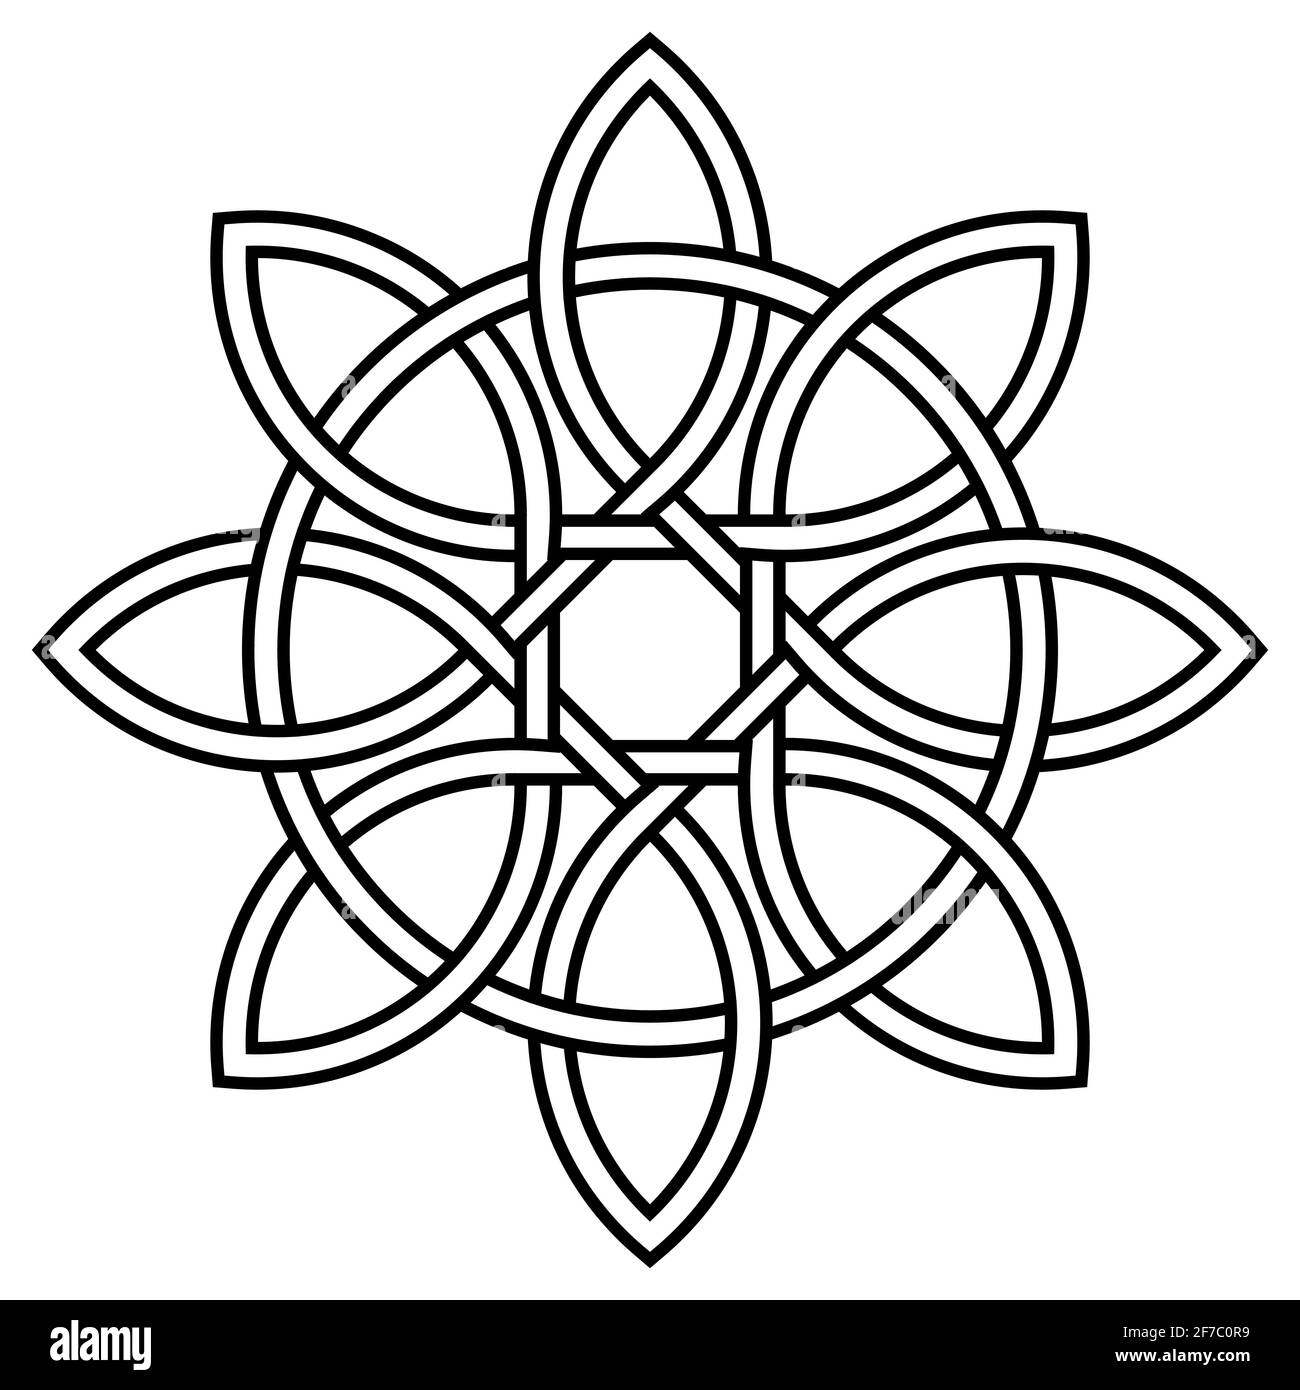 Nœud celtique de pétales et cercle de la nature et de la longévité, vecteur symbole tibétain nœud vie éternelle et amour Illustration de Vecteur